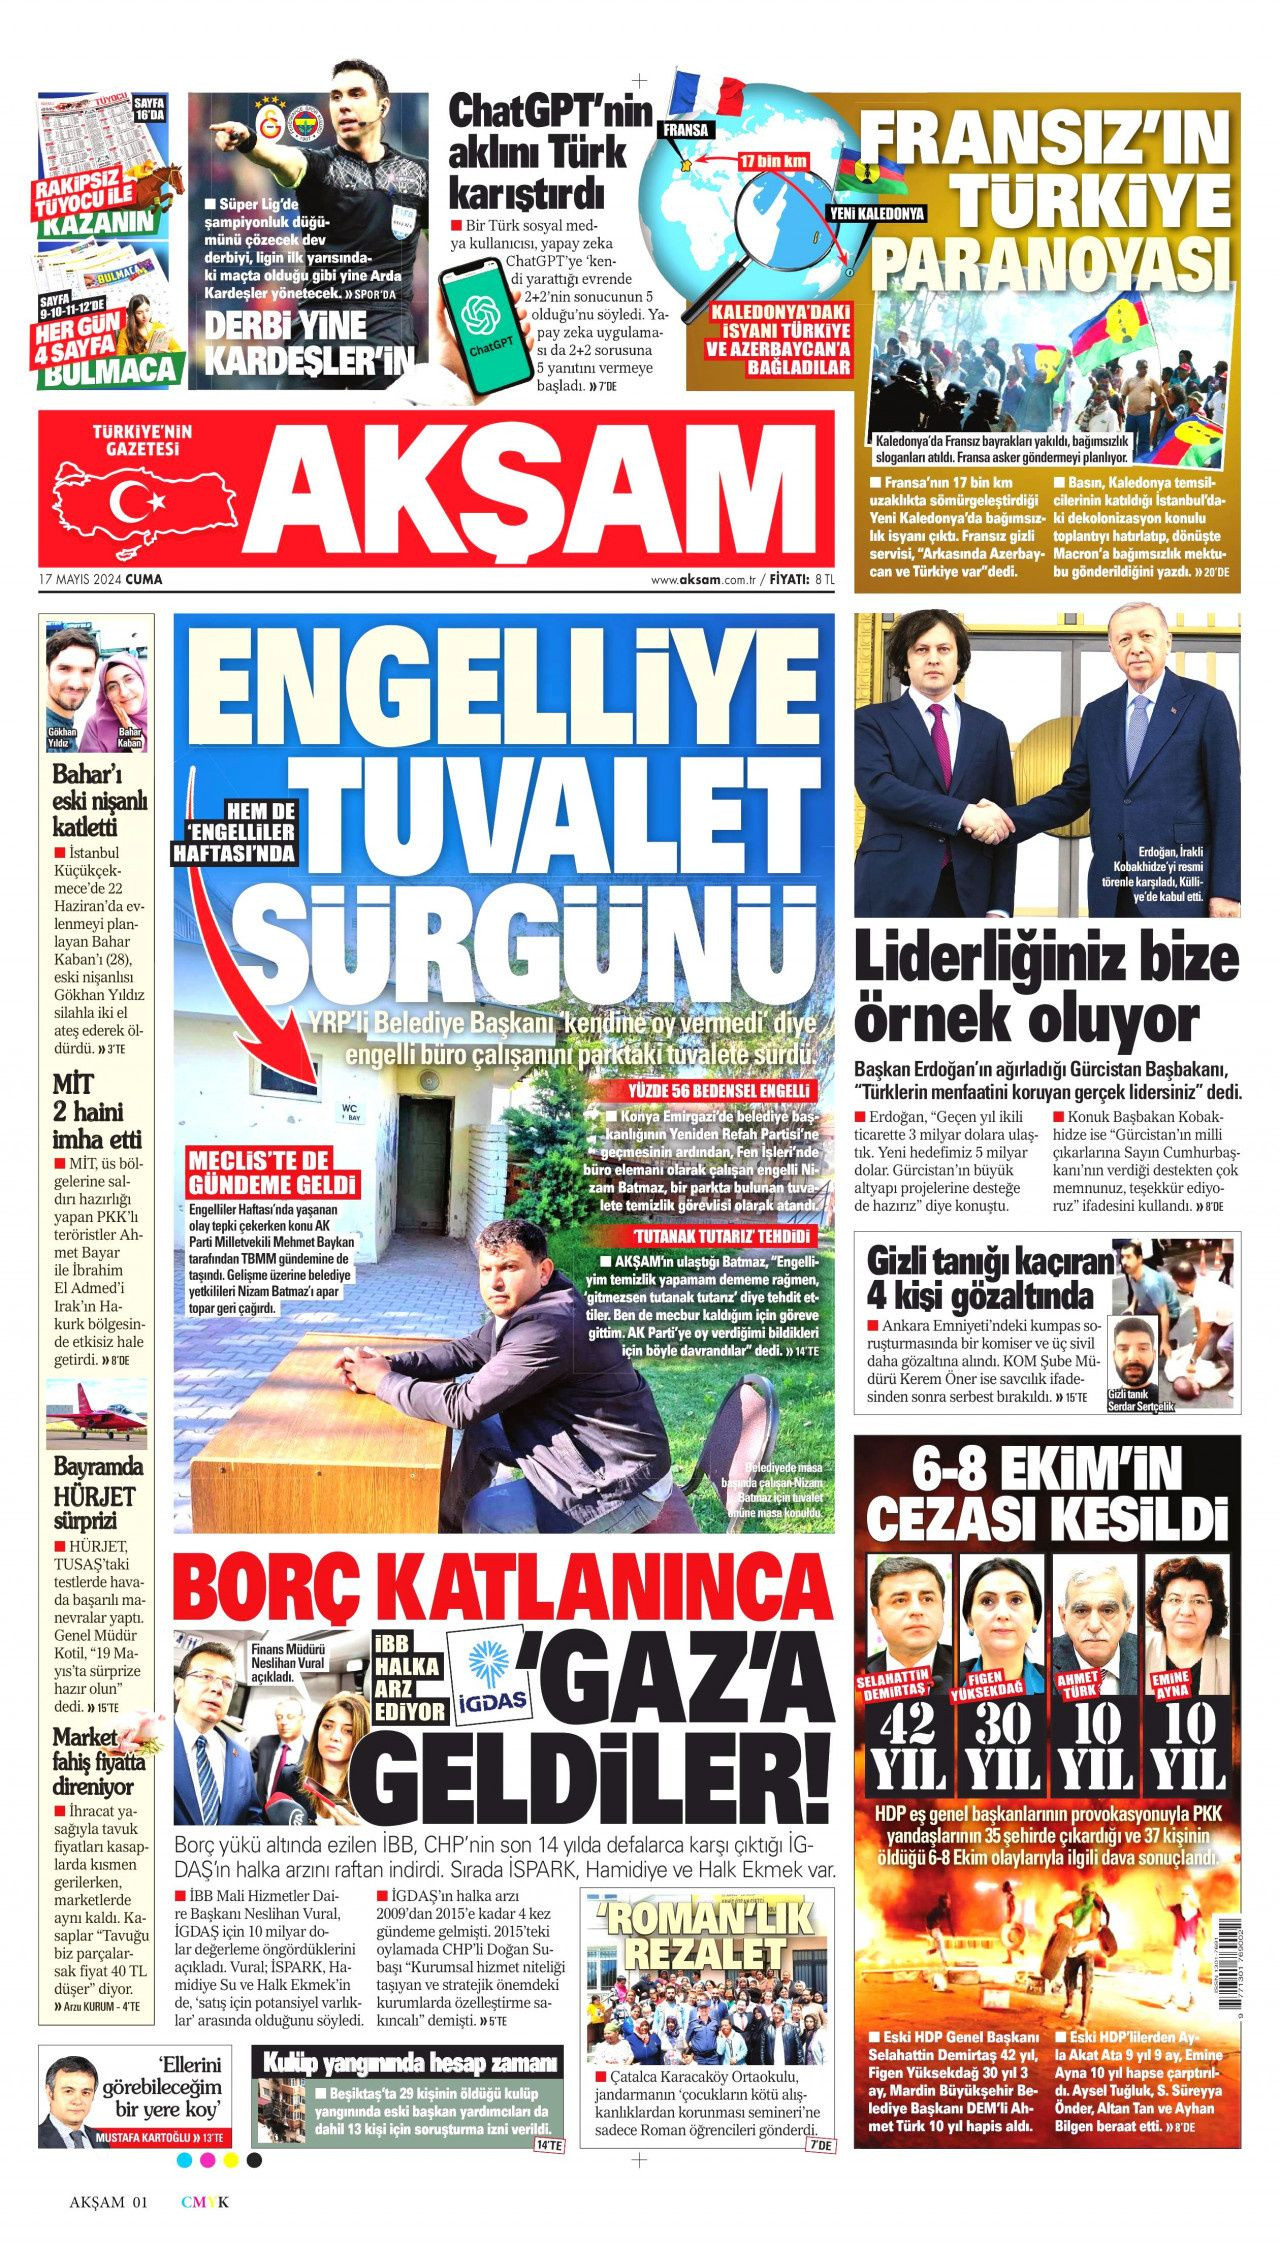 Gazeteler Kobanê davası kararlarını nasıl ve nereden gördü? - Sayfa 3